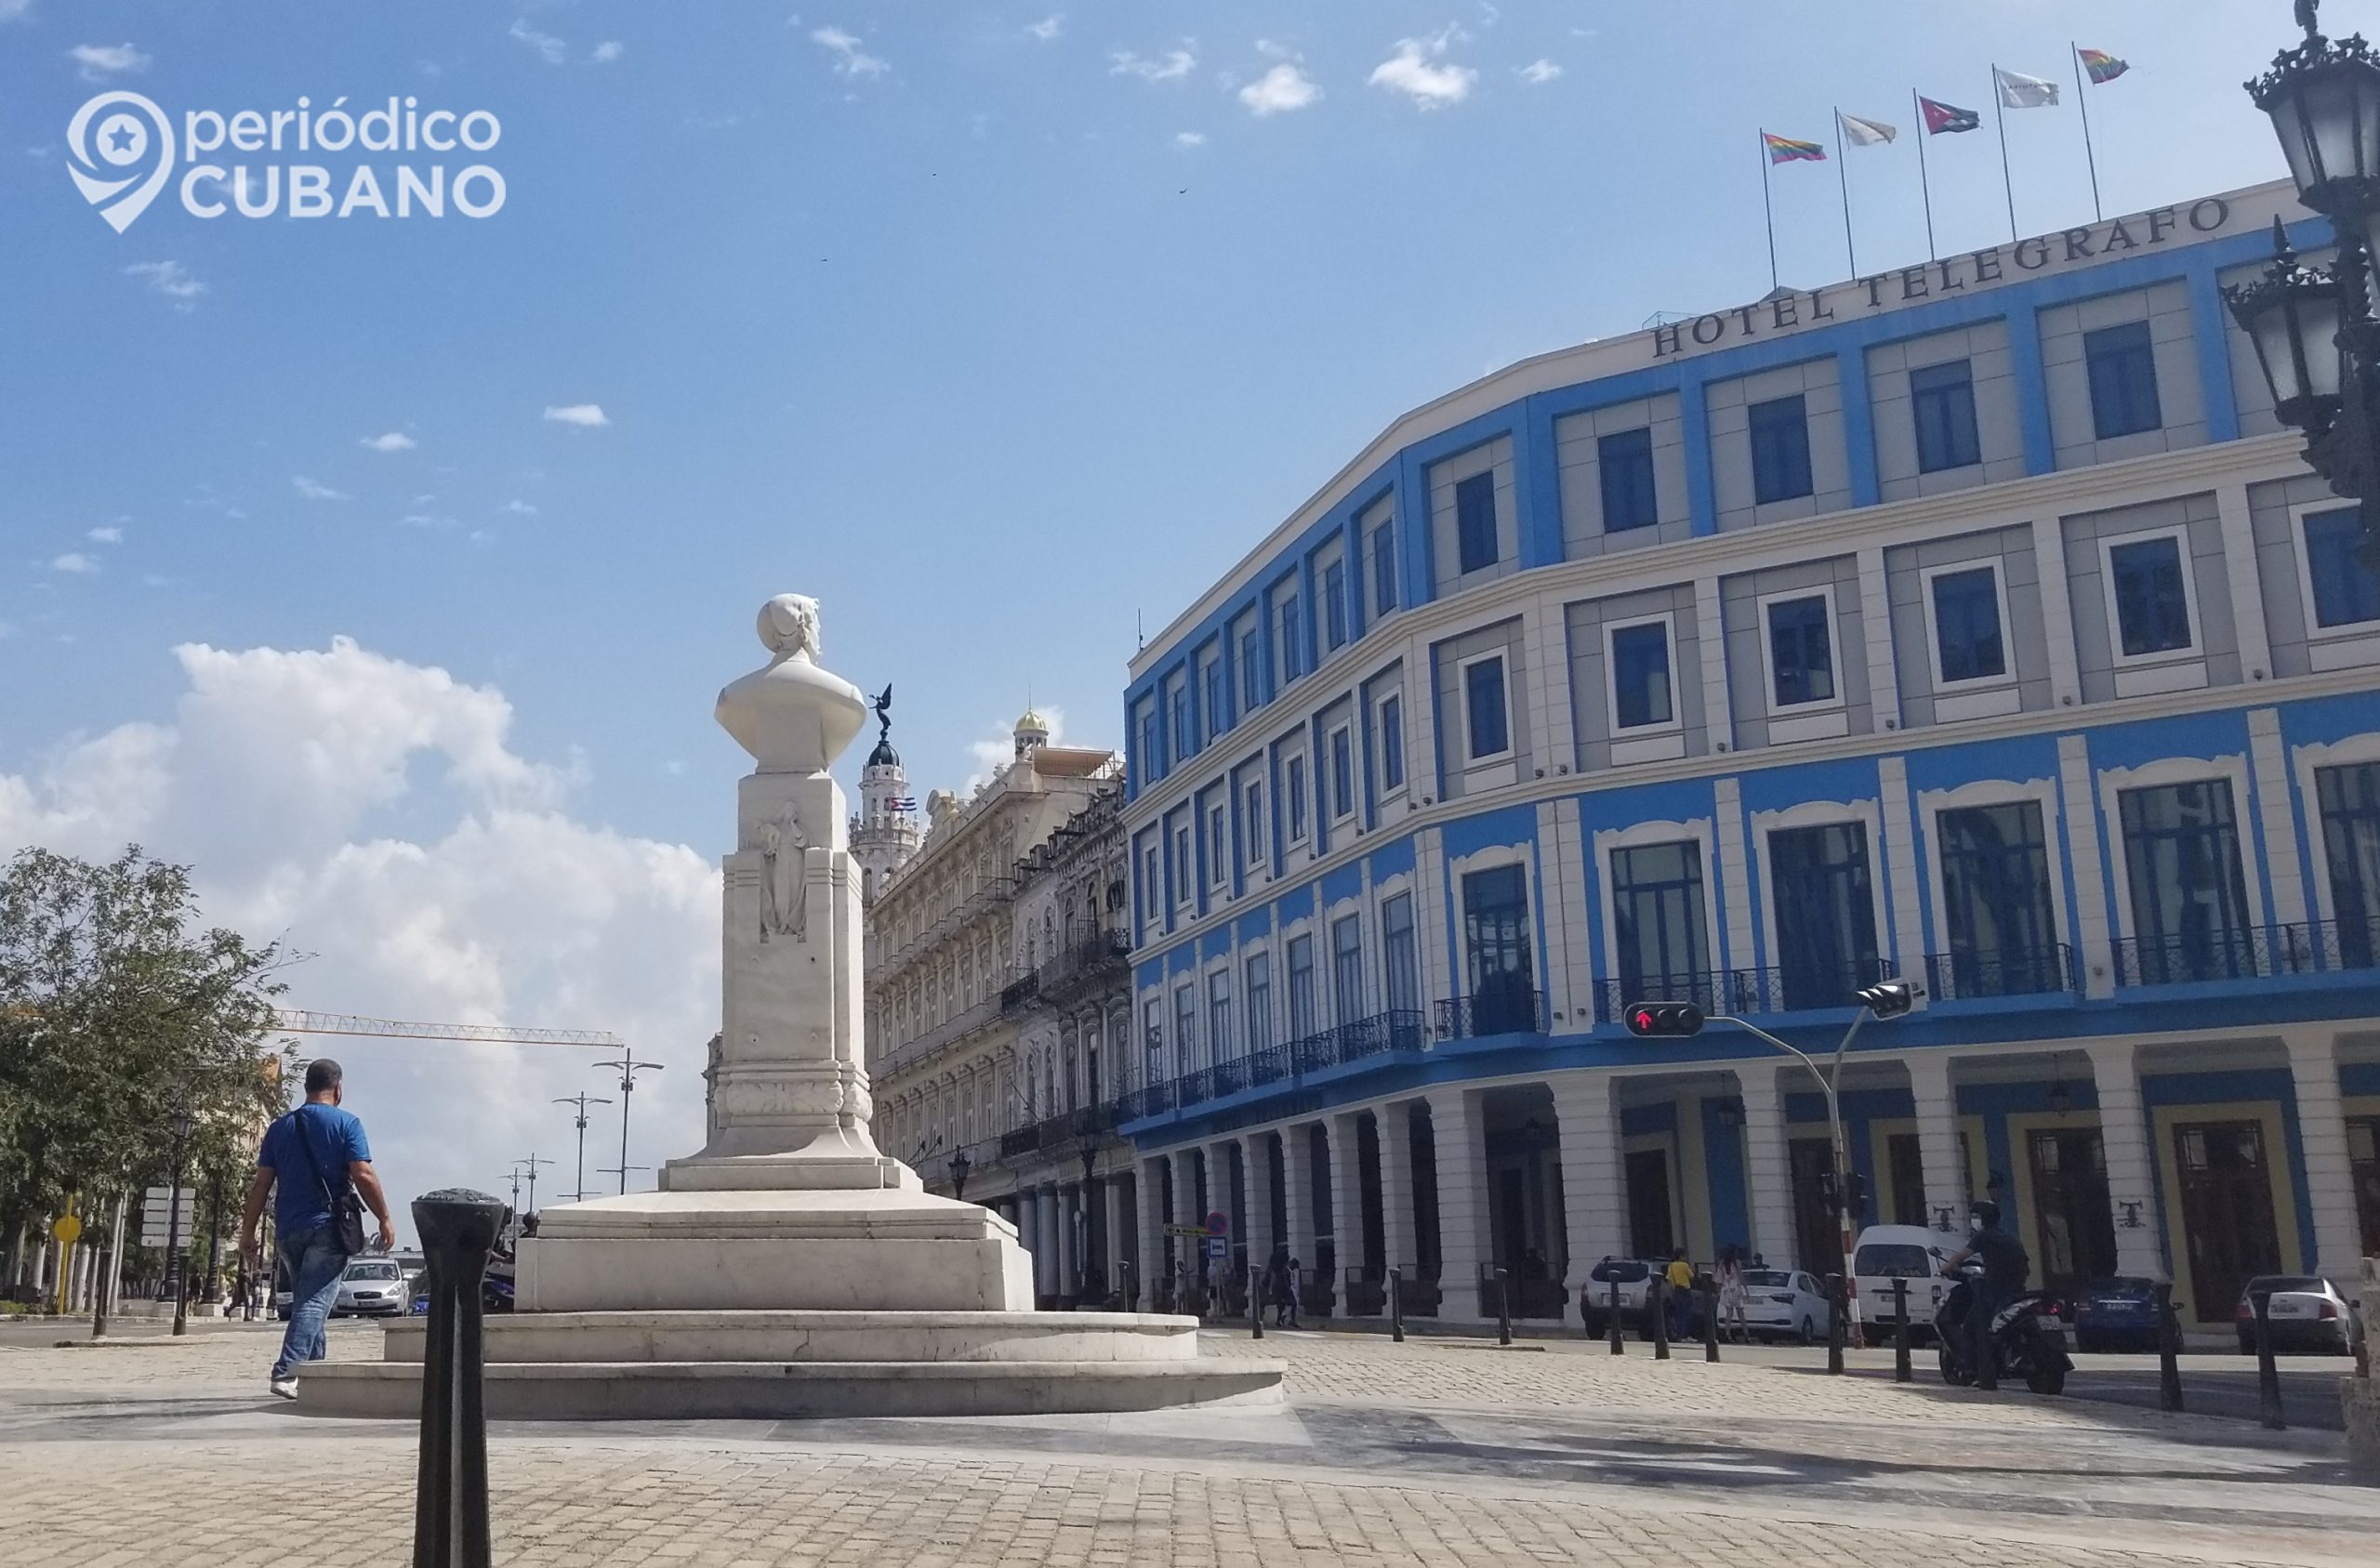 Solo el 14.4% de los hoteles en Cuba estuvo ocupado durante la primera mitad del año